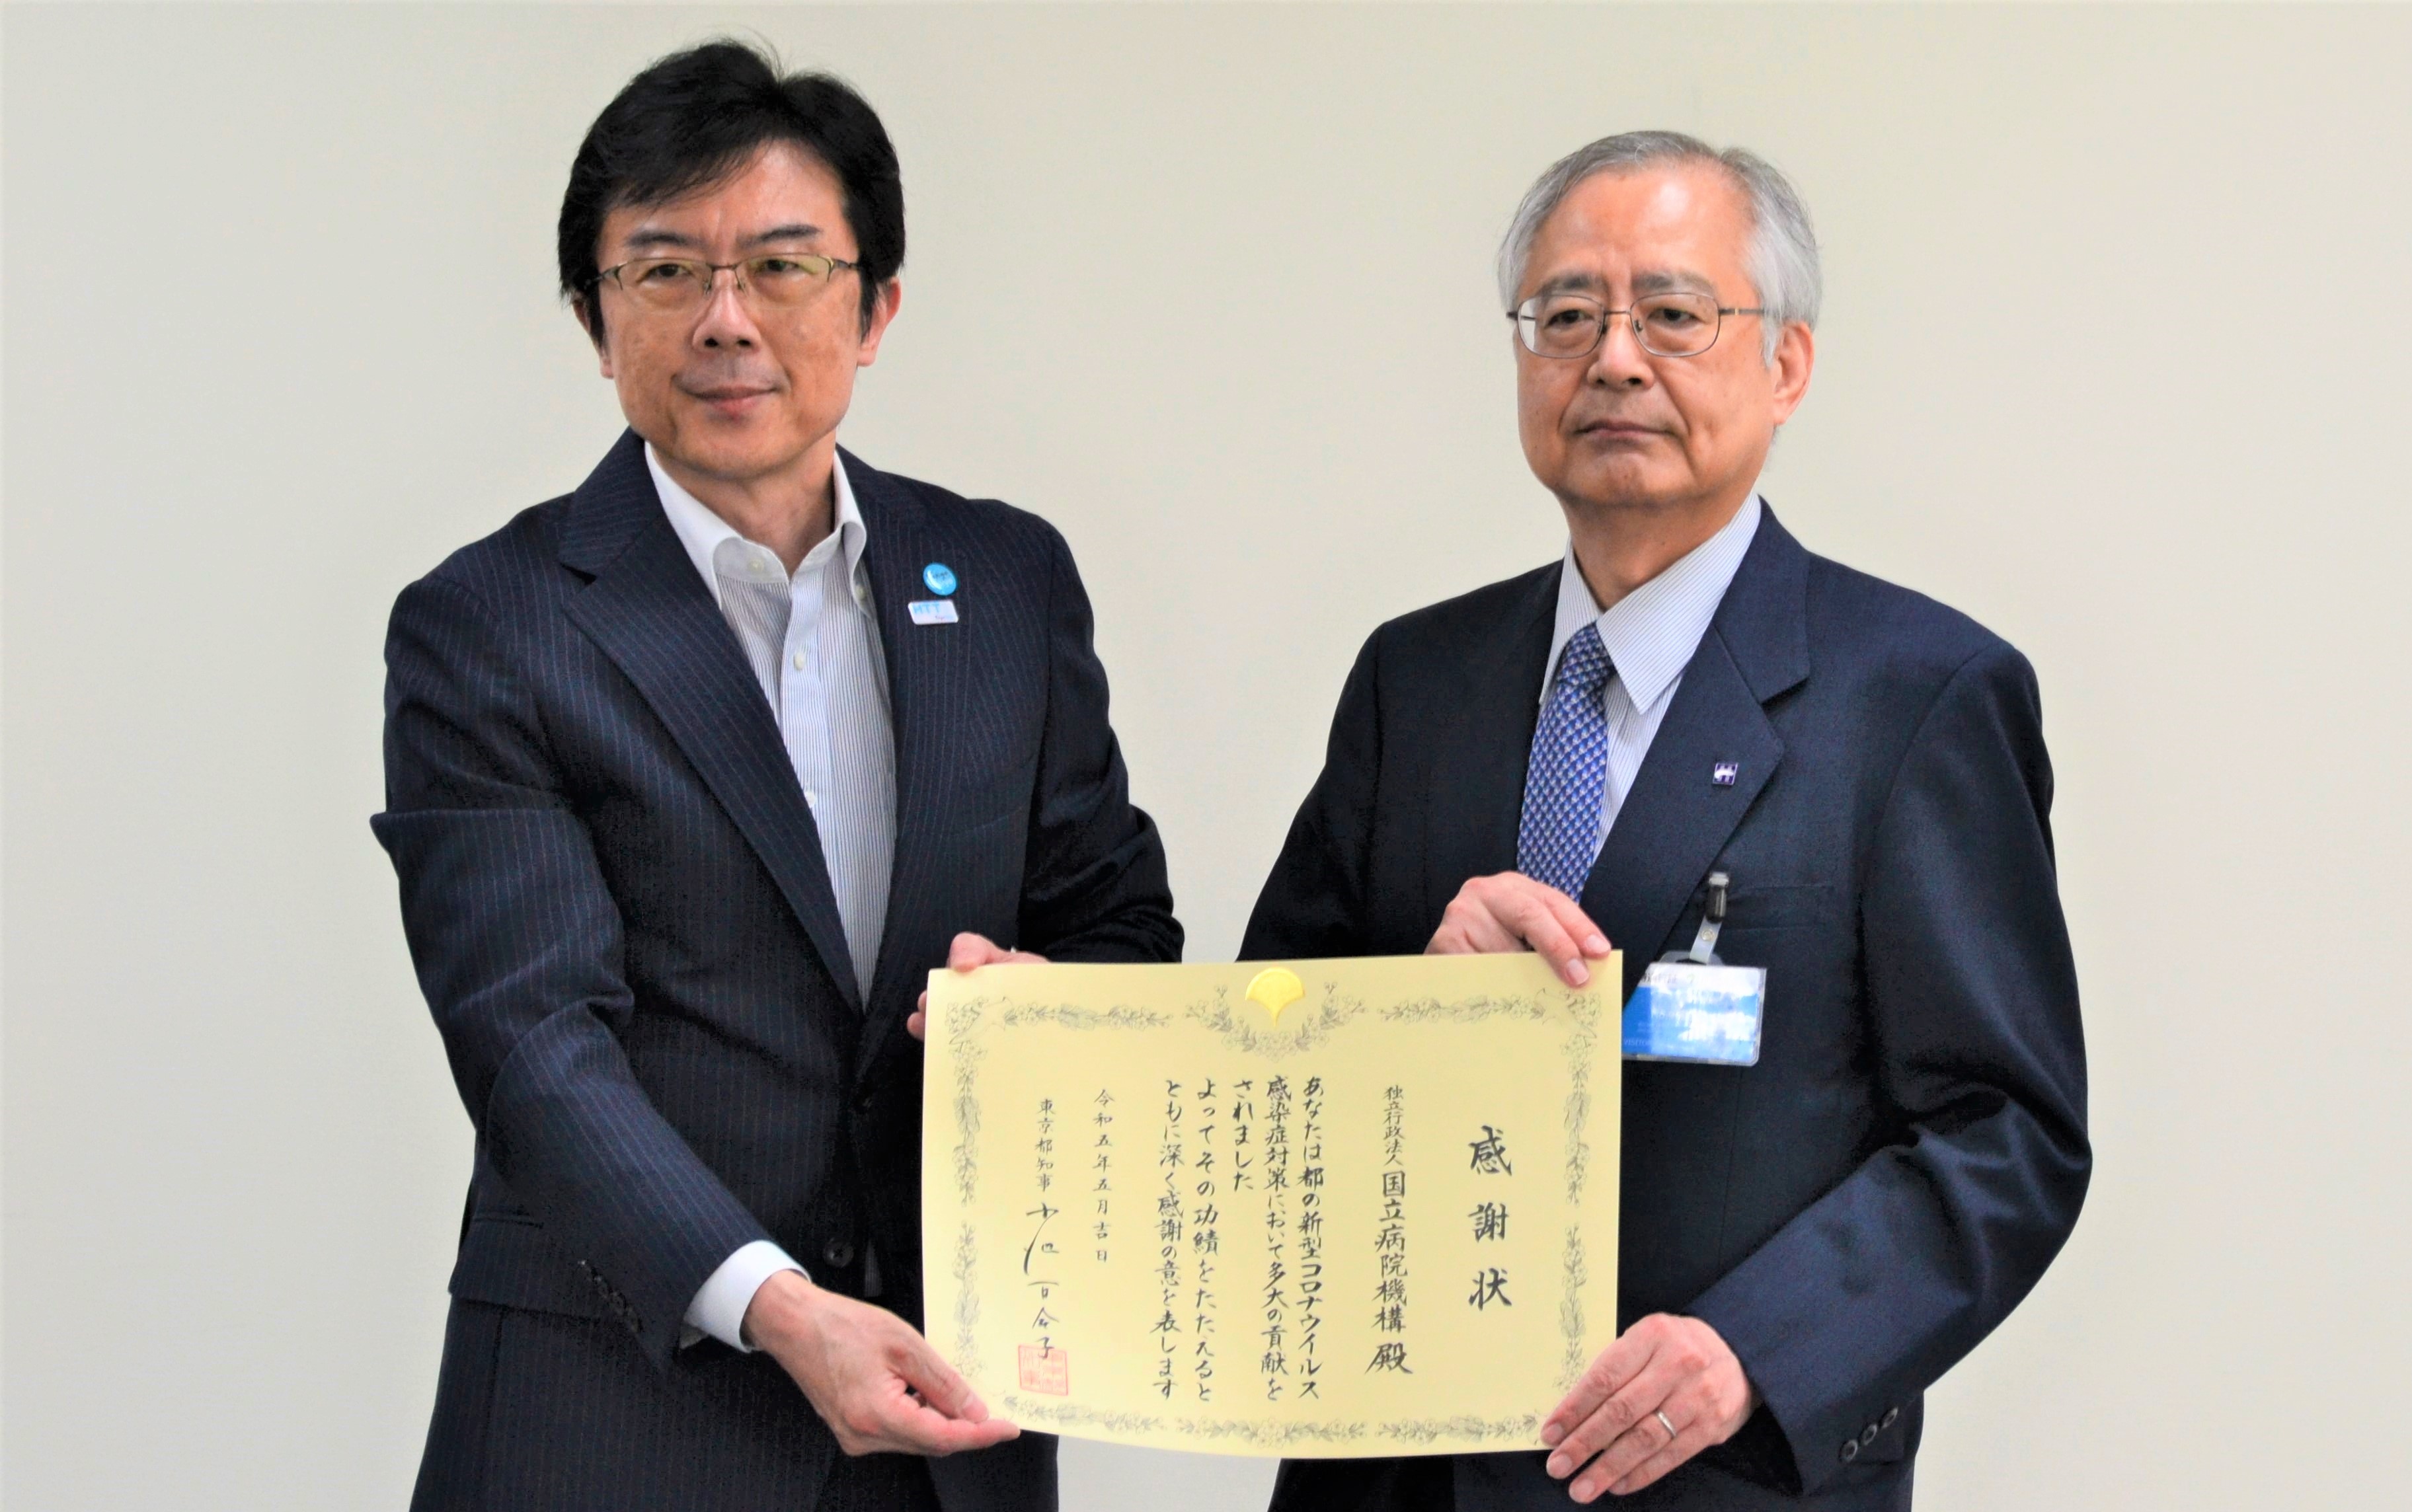 東京都知事からの感謝状贈呈 ～新型コロナウイルス感染症対策～